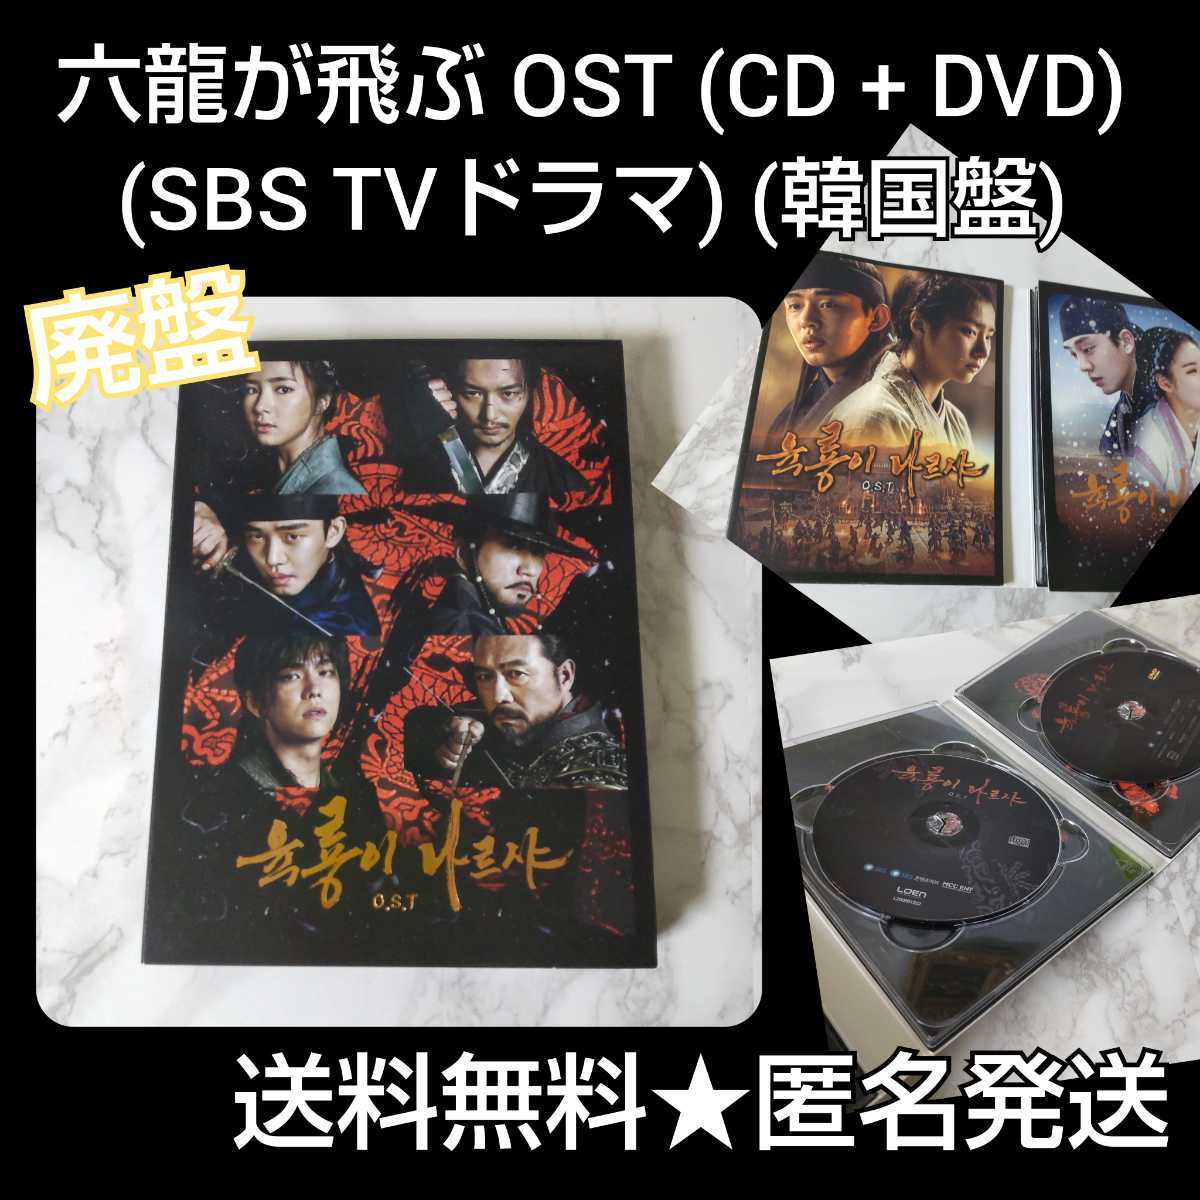 『六龍が飛ぶ』 OST (CD + DVD) (SBS TVドラマ) (韓国盤) 品